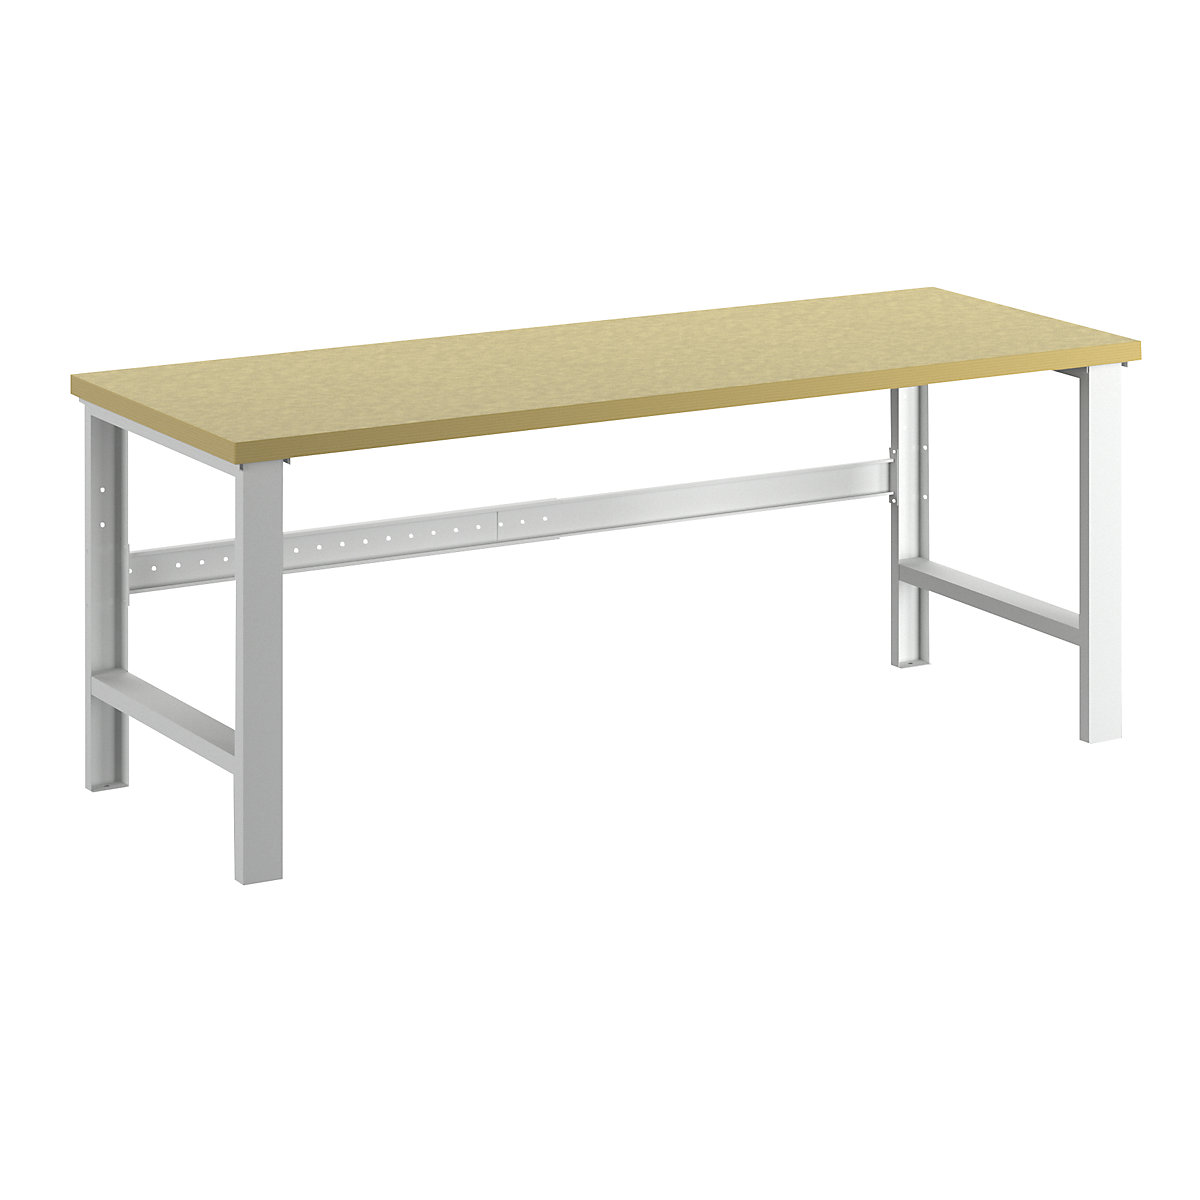 Modulna delovna miza – Treston, osnovni model, plošča multipleks, ŠxG 2000 x 750 mm-9